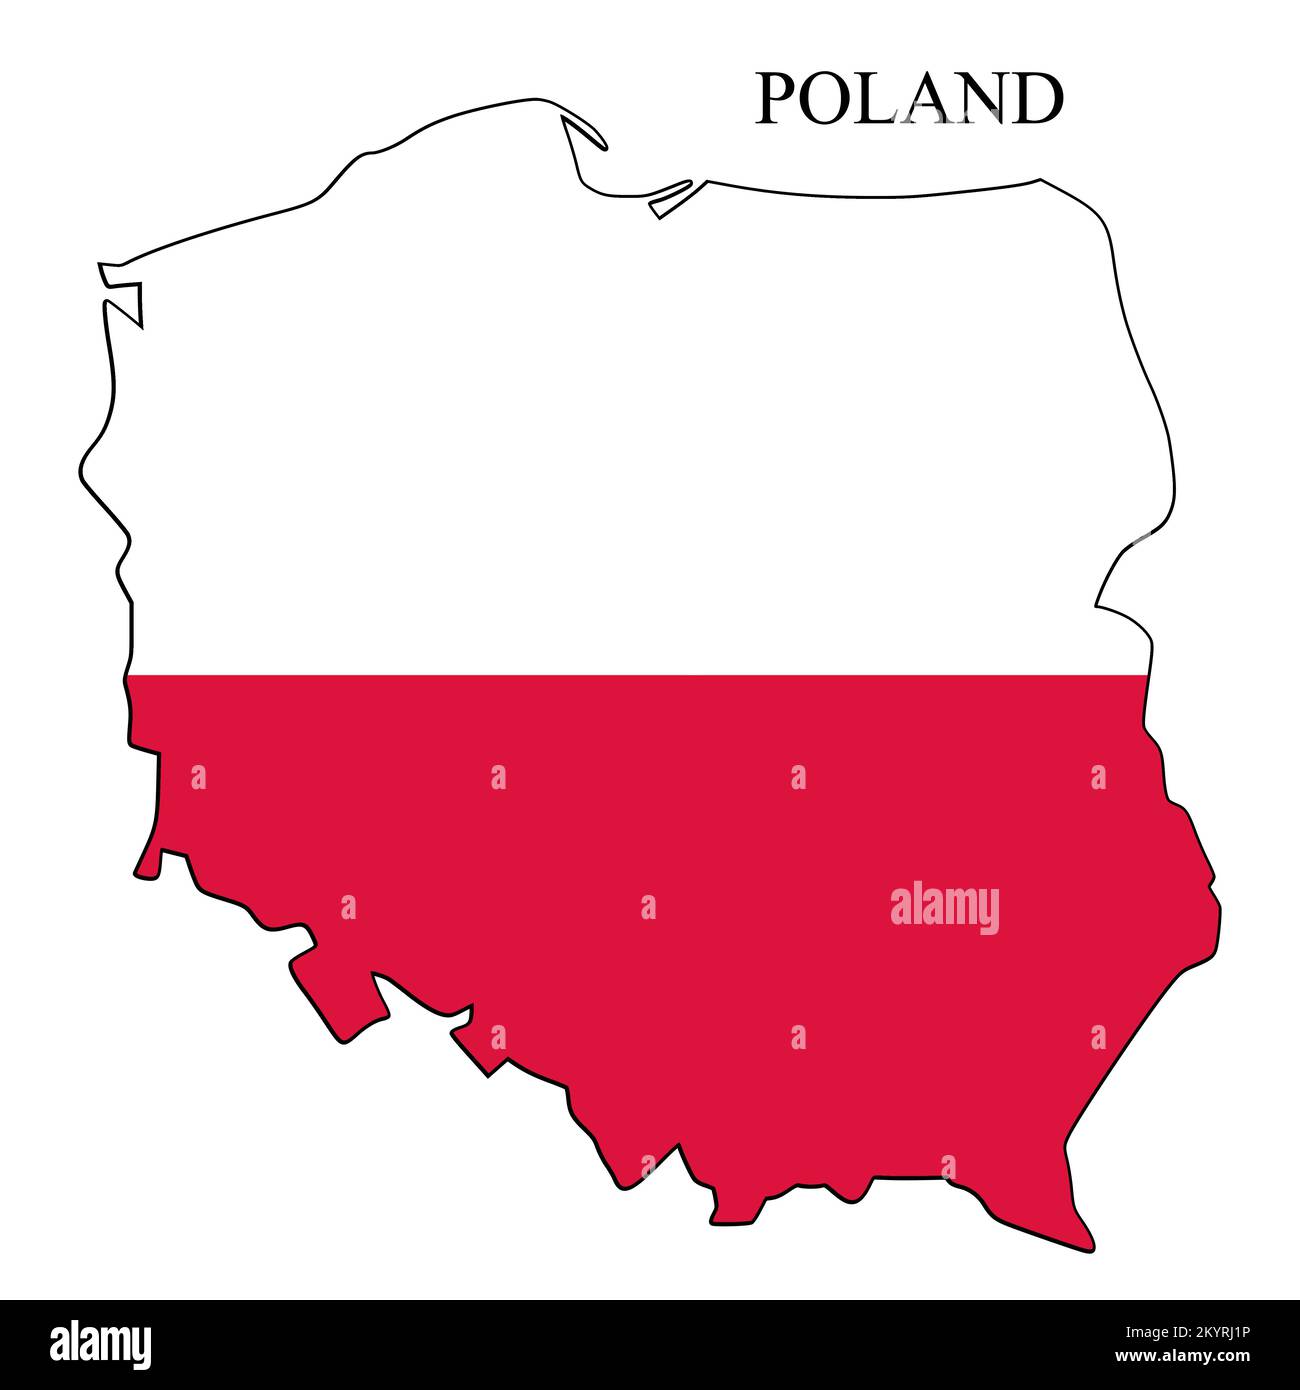 Illustration vectorielle de la carte de la Pologne. Économie mondiale. Pays célèbre. Europe de l'est. Europe. Illustration de Vecteur